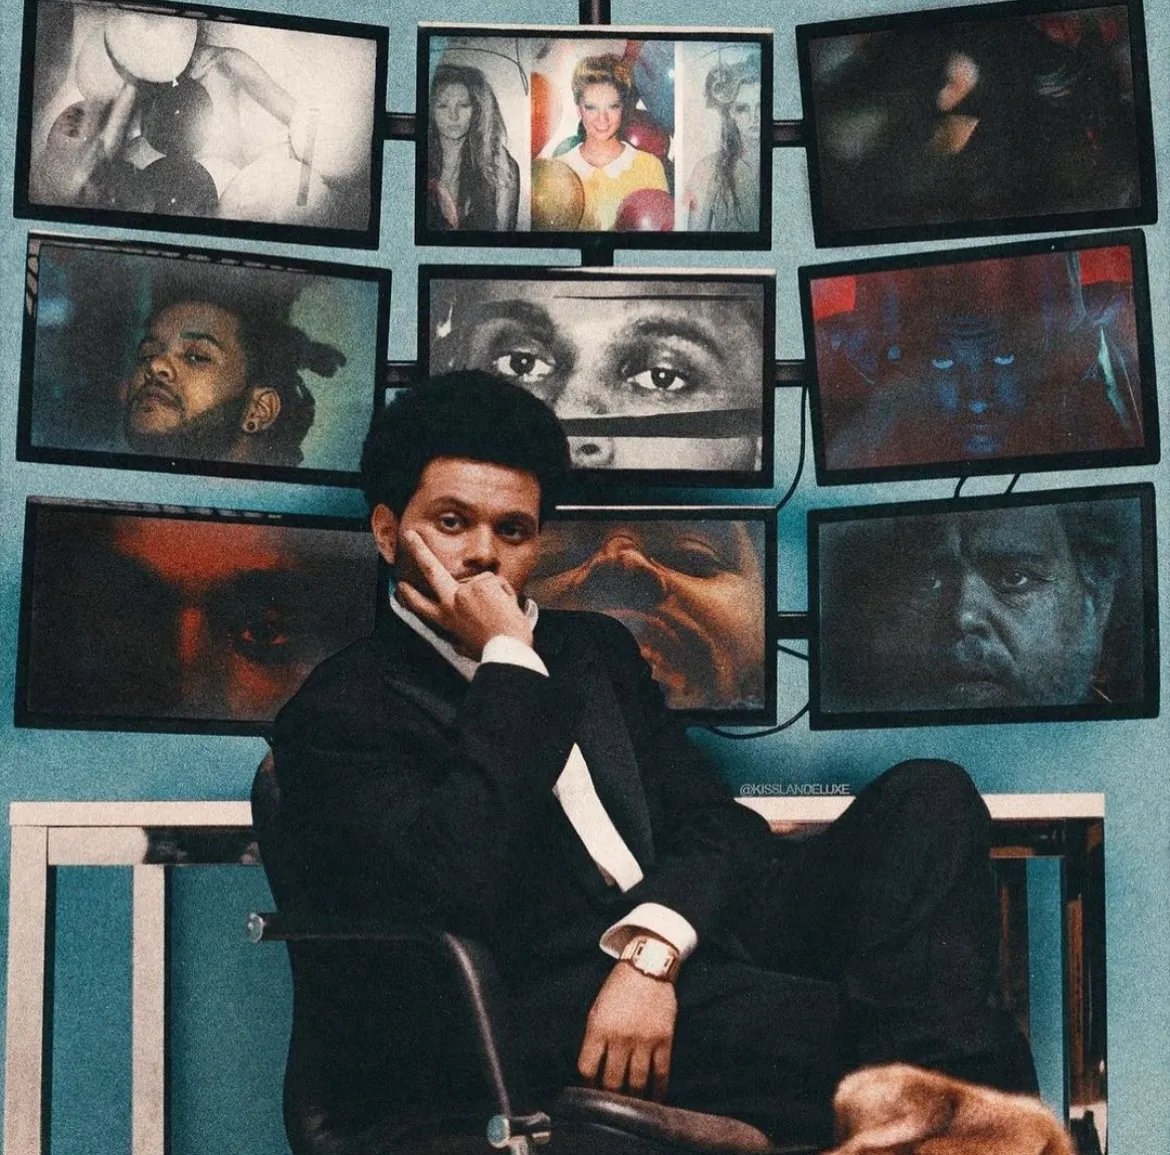 TikTok y Universal Music Group llegaron a un nuevo acuerdo de licencia, por lo que se espera que la discografía de The Weeknd se restablezca pronto en dicha plataforma.